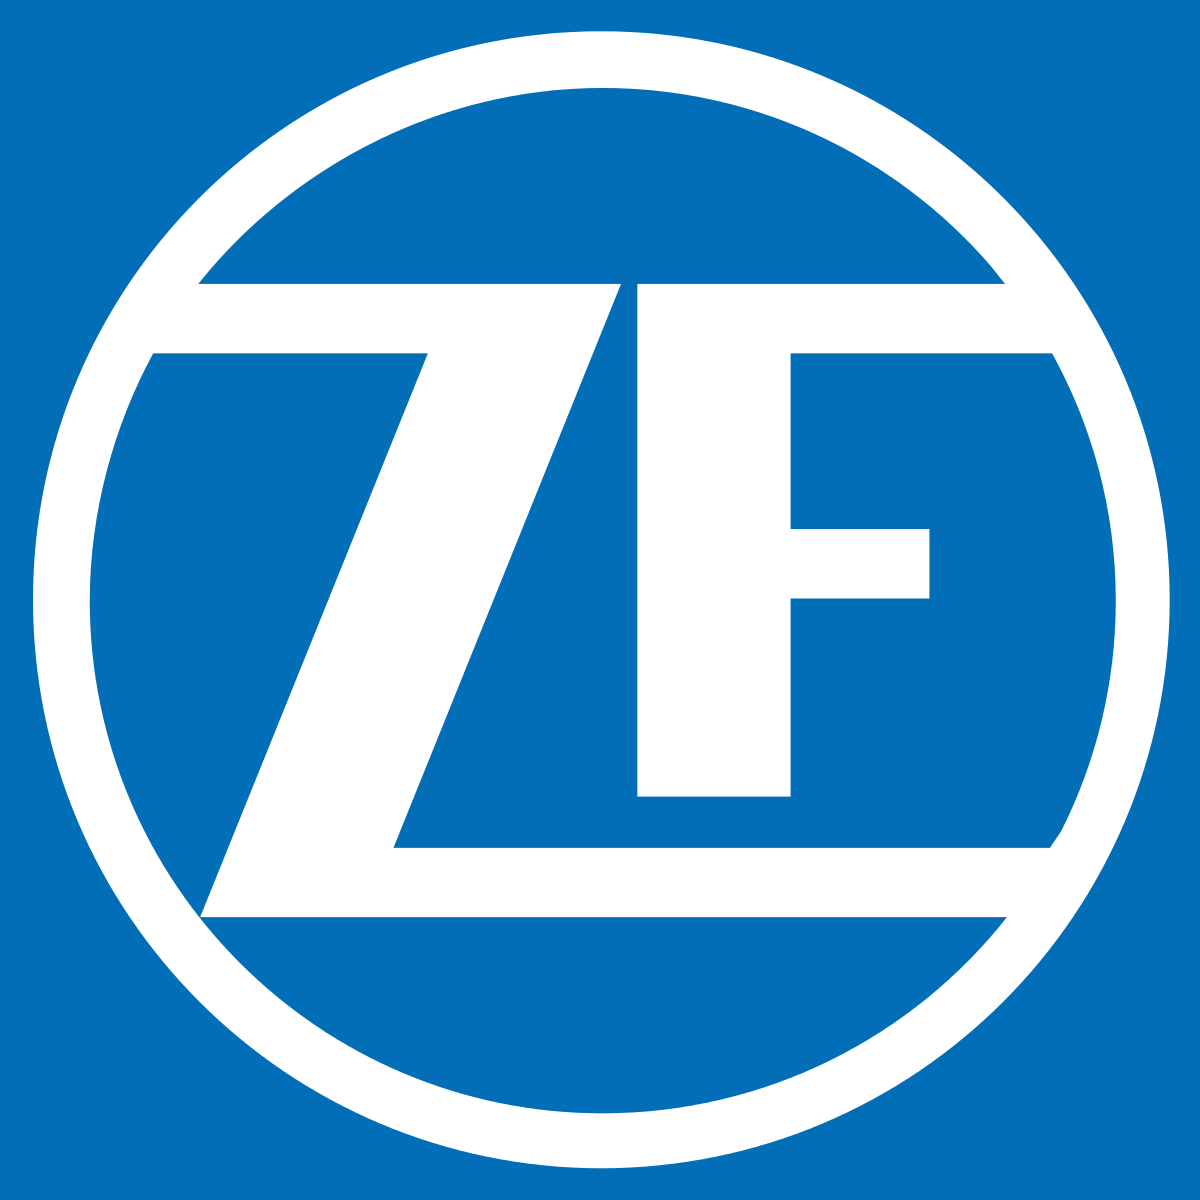 TRW Logo - ZF Friedrichshafen